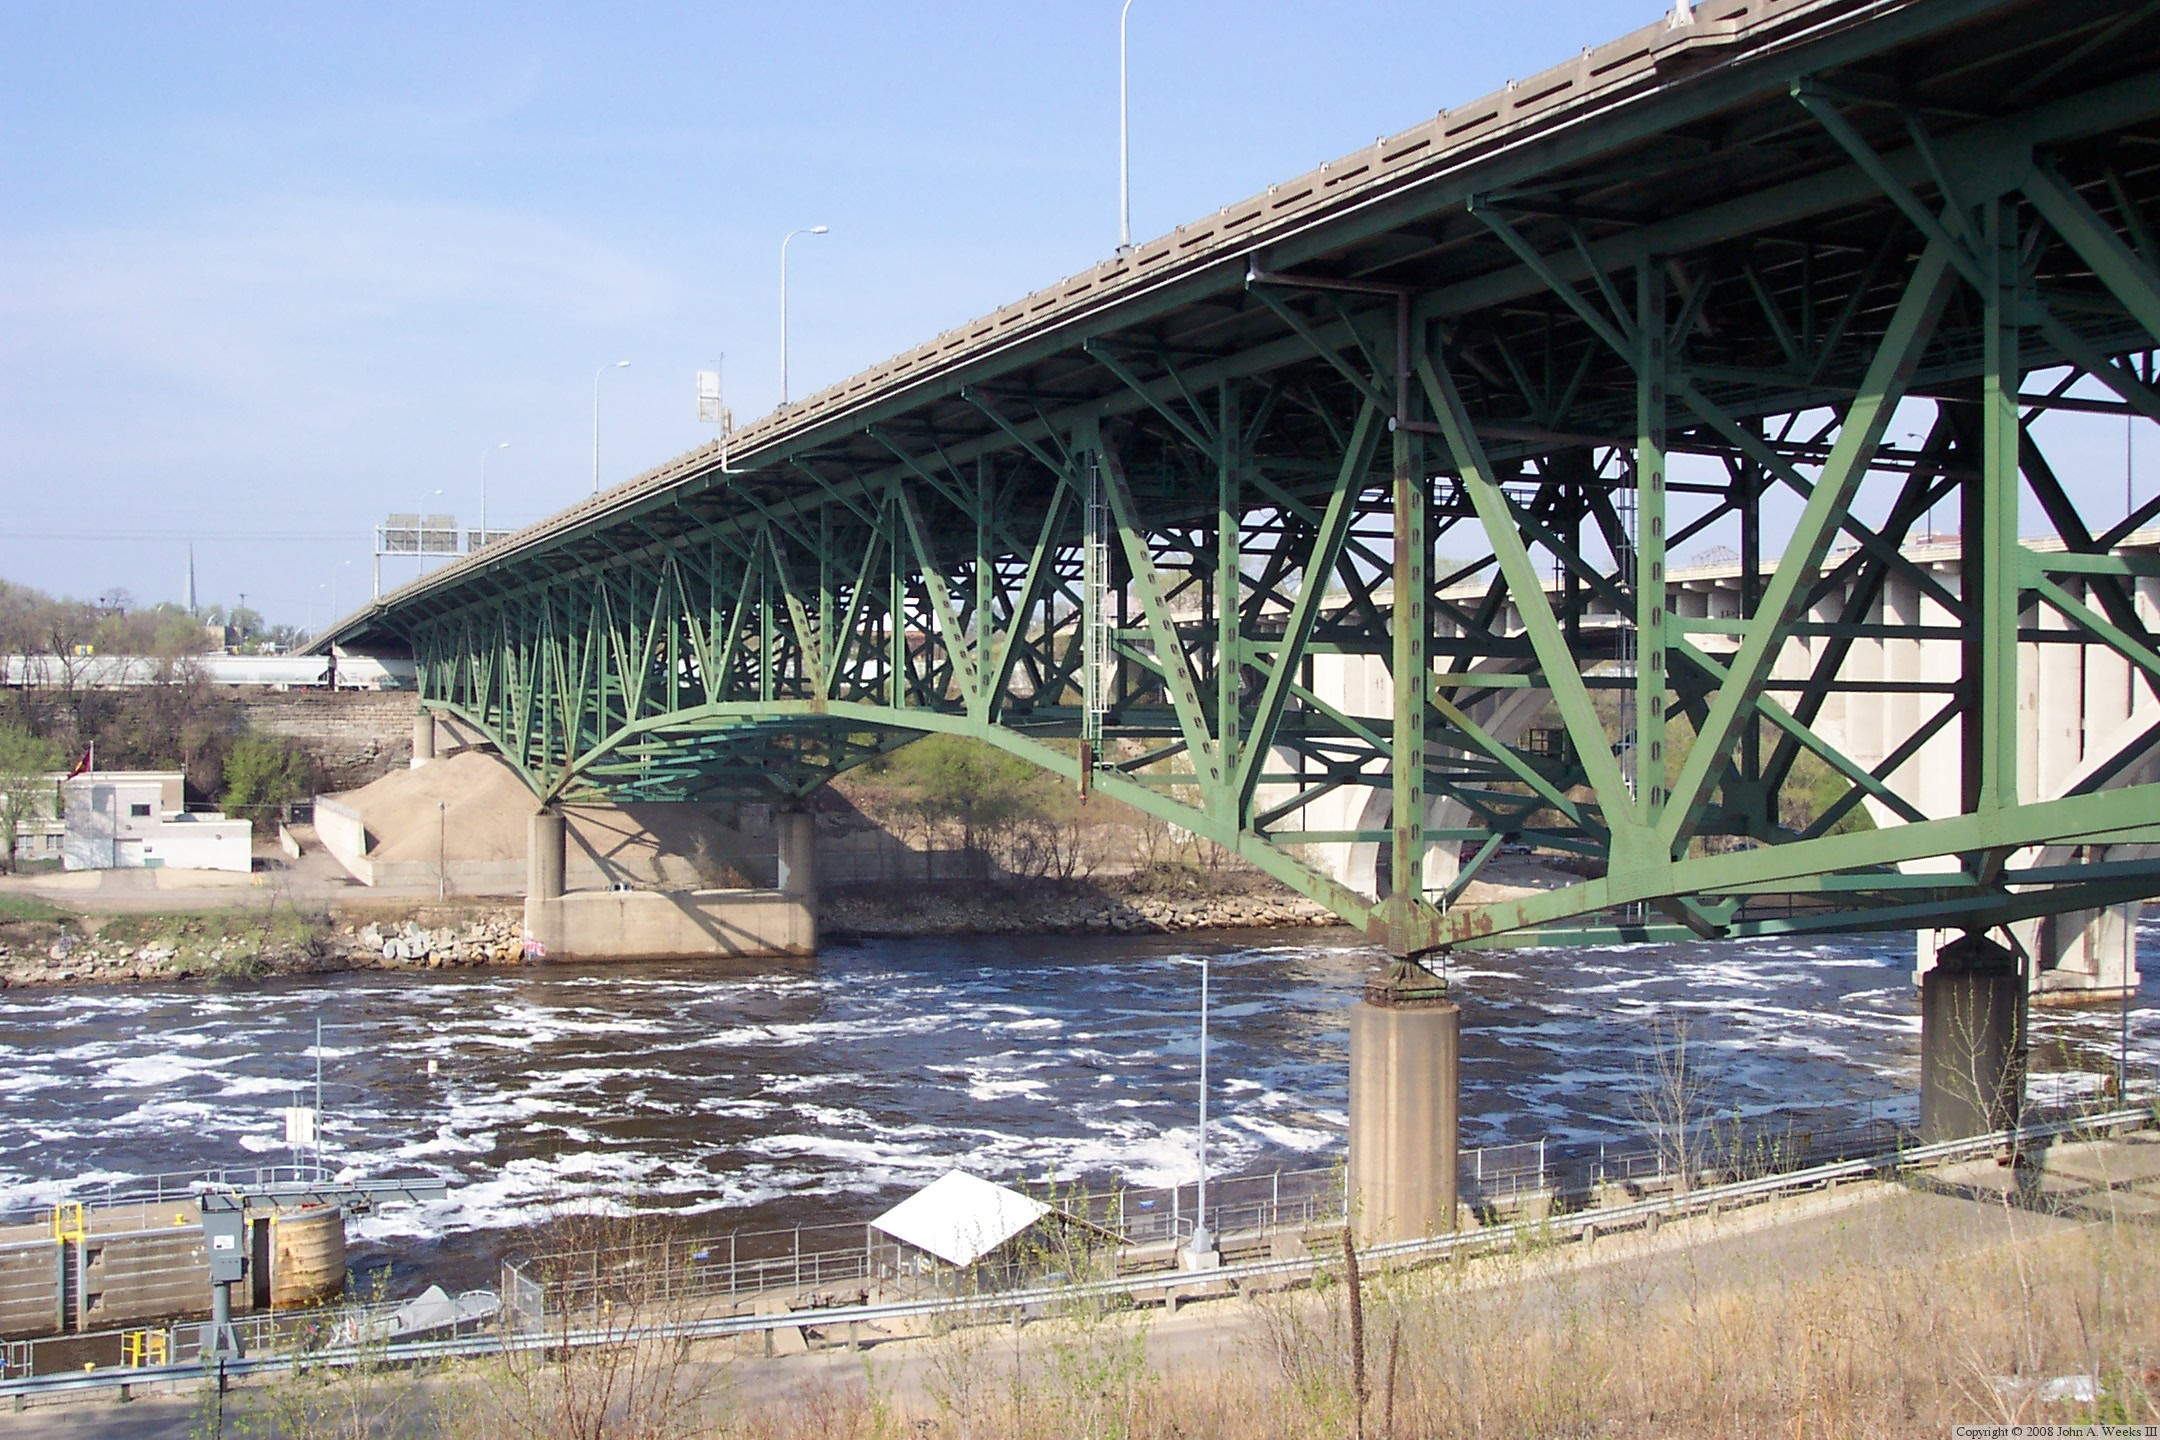 Мост 1 2. Мост i-35w через Миссисипи. Миссисипи мост. Мост автомагистрали i-35w через реку Миссисипи 2008. Мост i-35w, Миннеаполис, Миннесота.